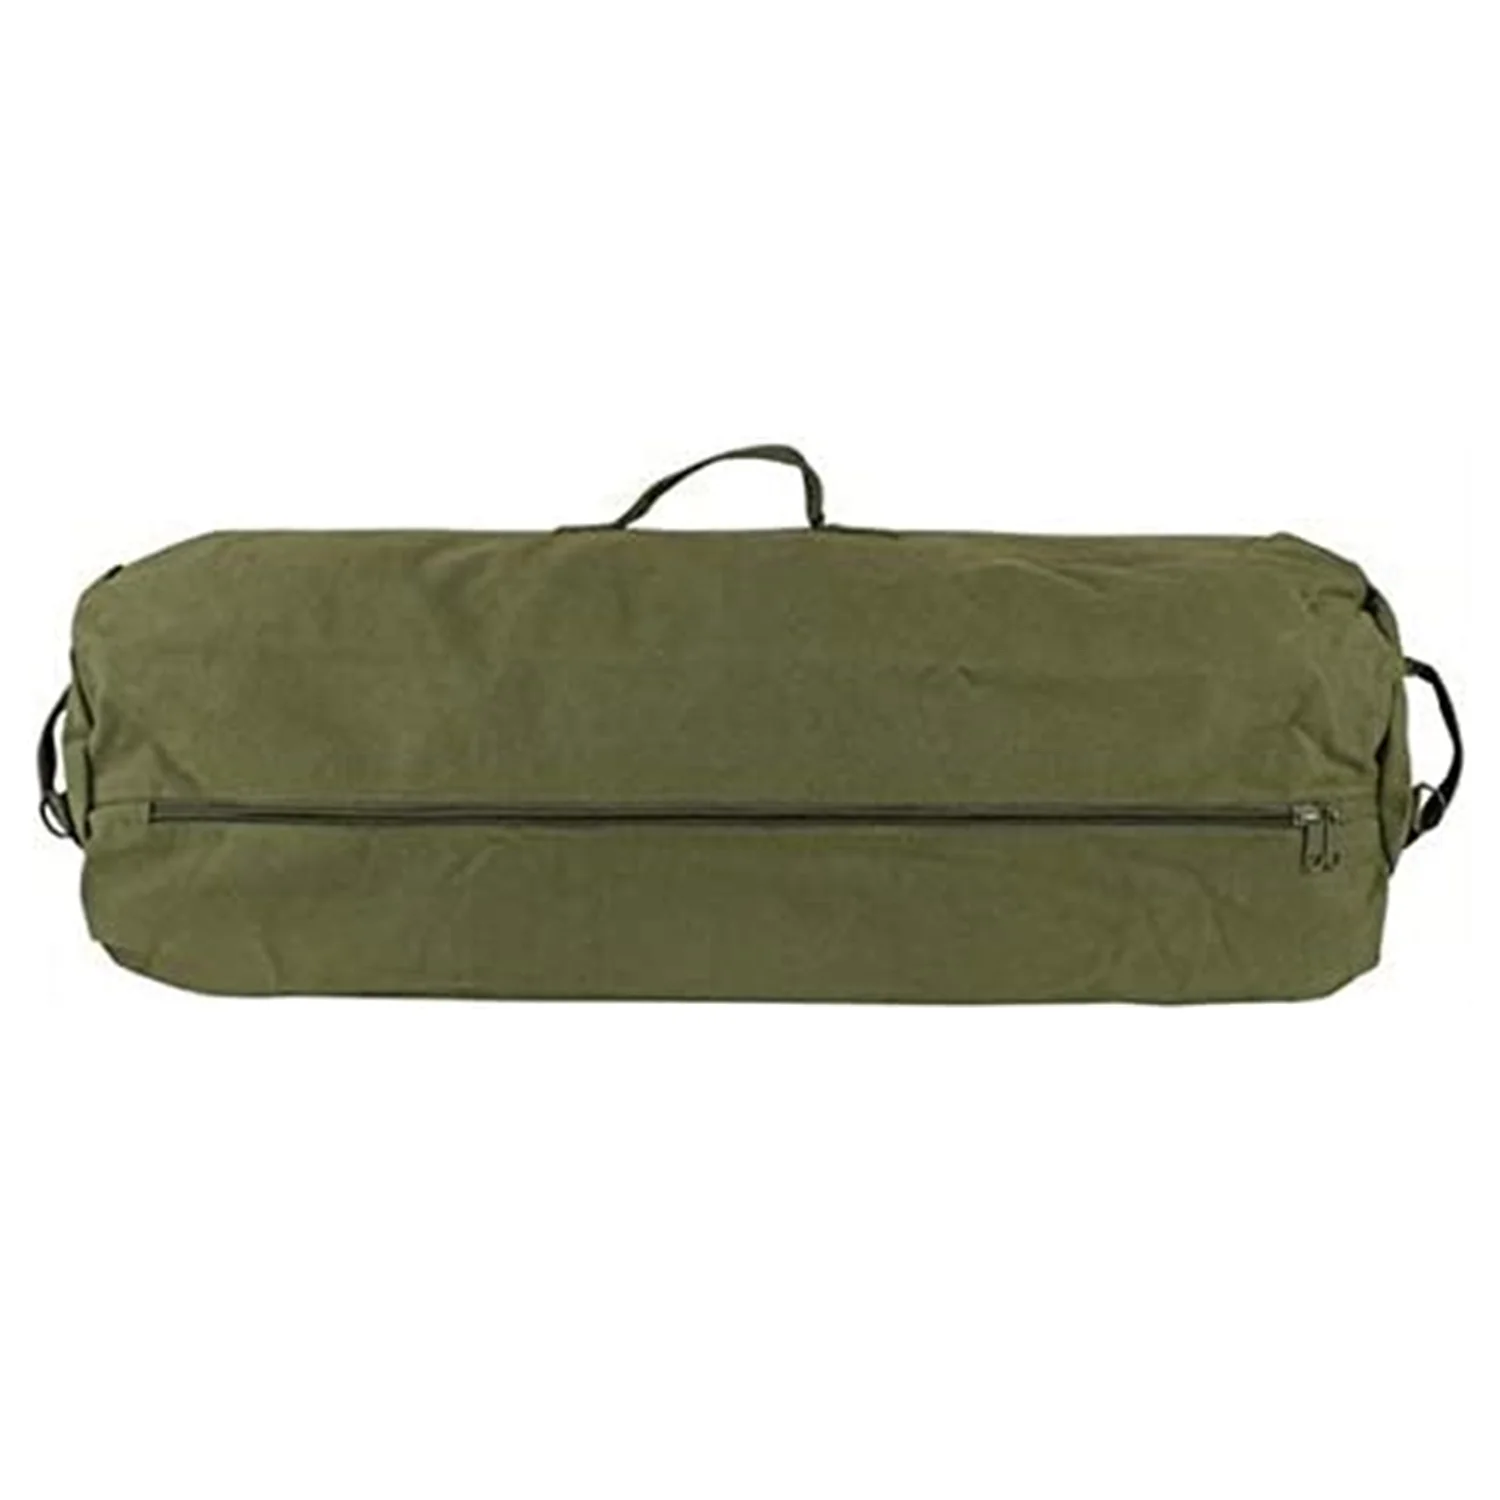 military grade duffle bag